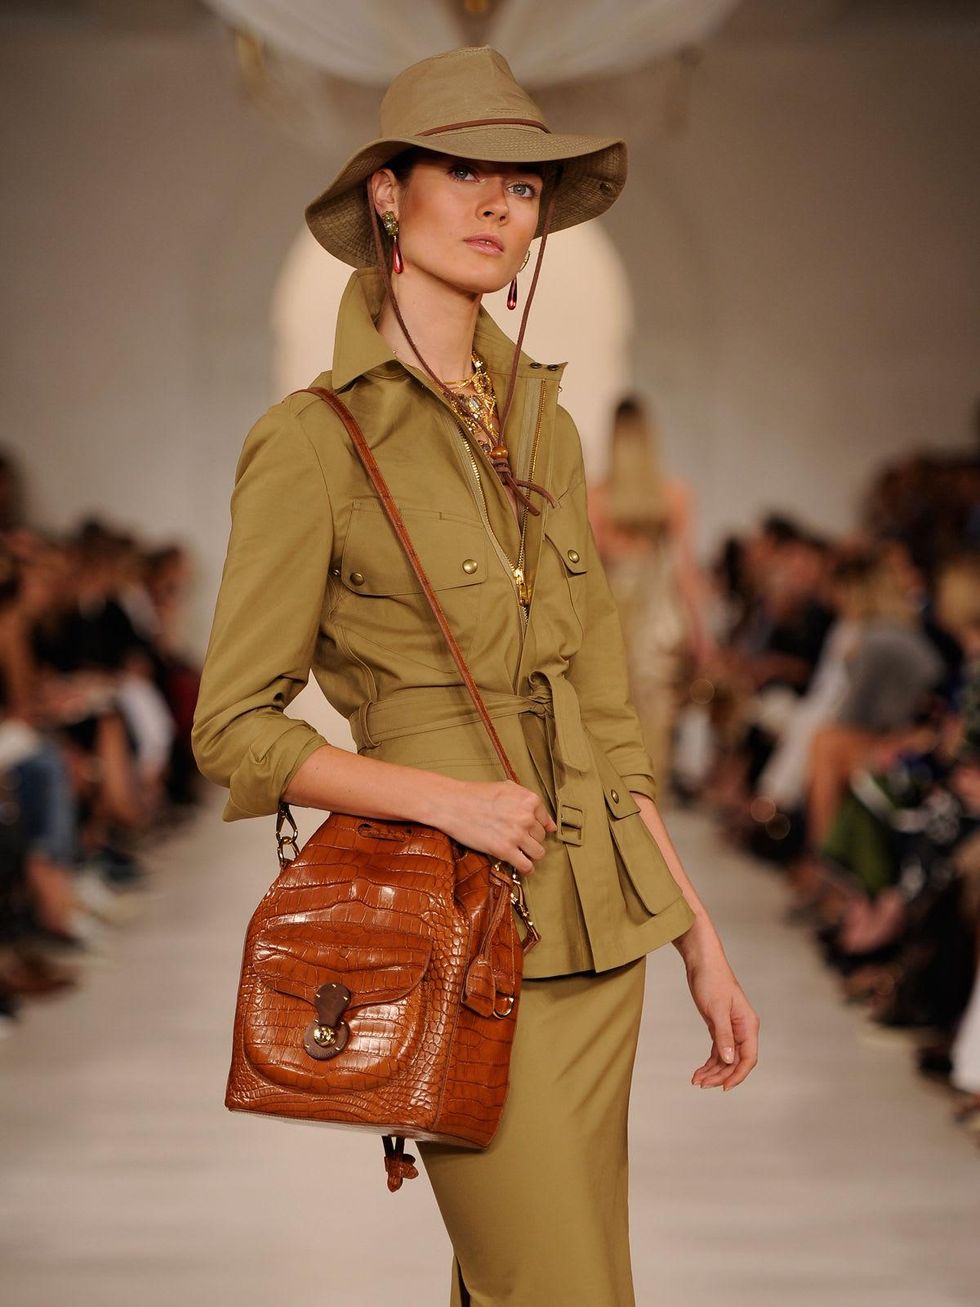 Fashion Week spring 2015 Ralph Lauren September 2014 safari with bag